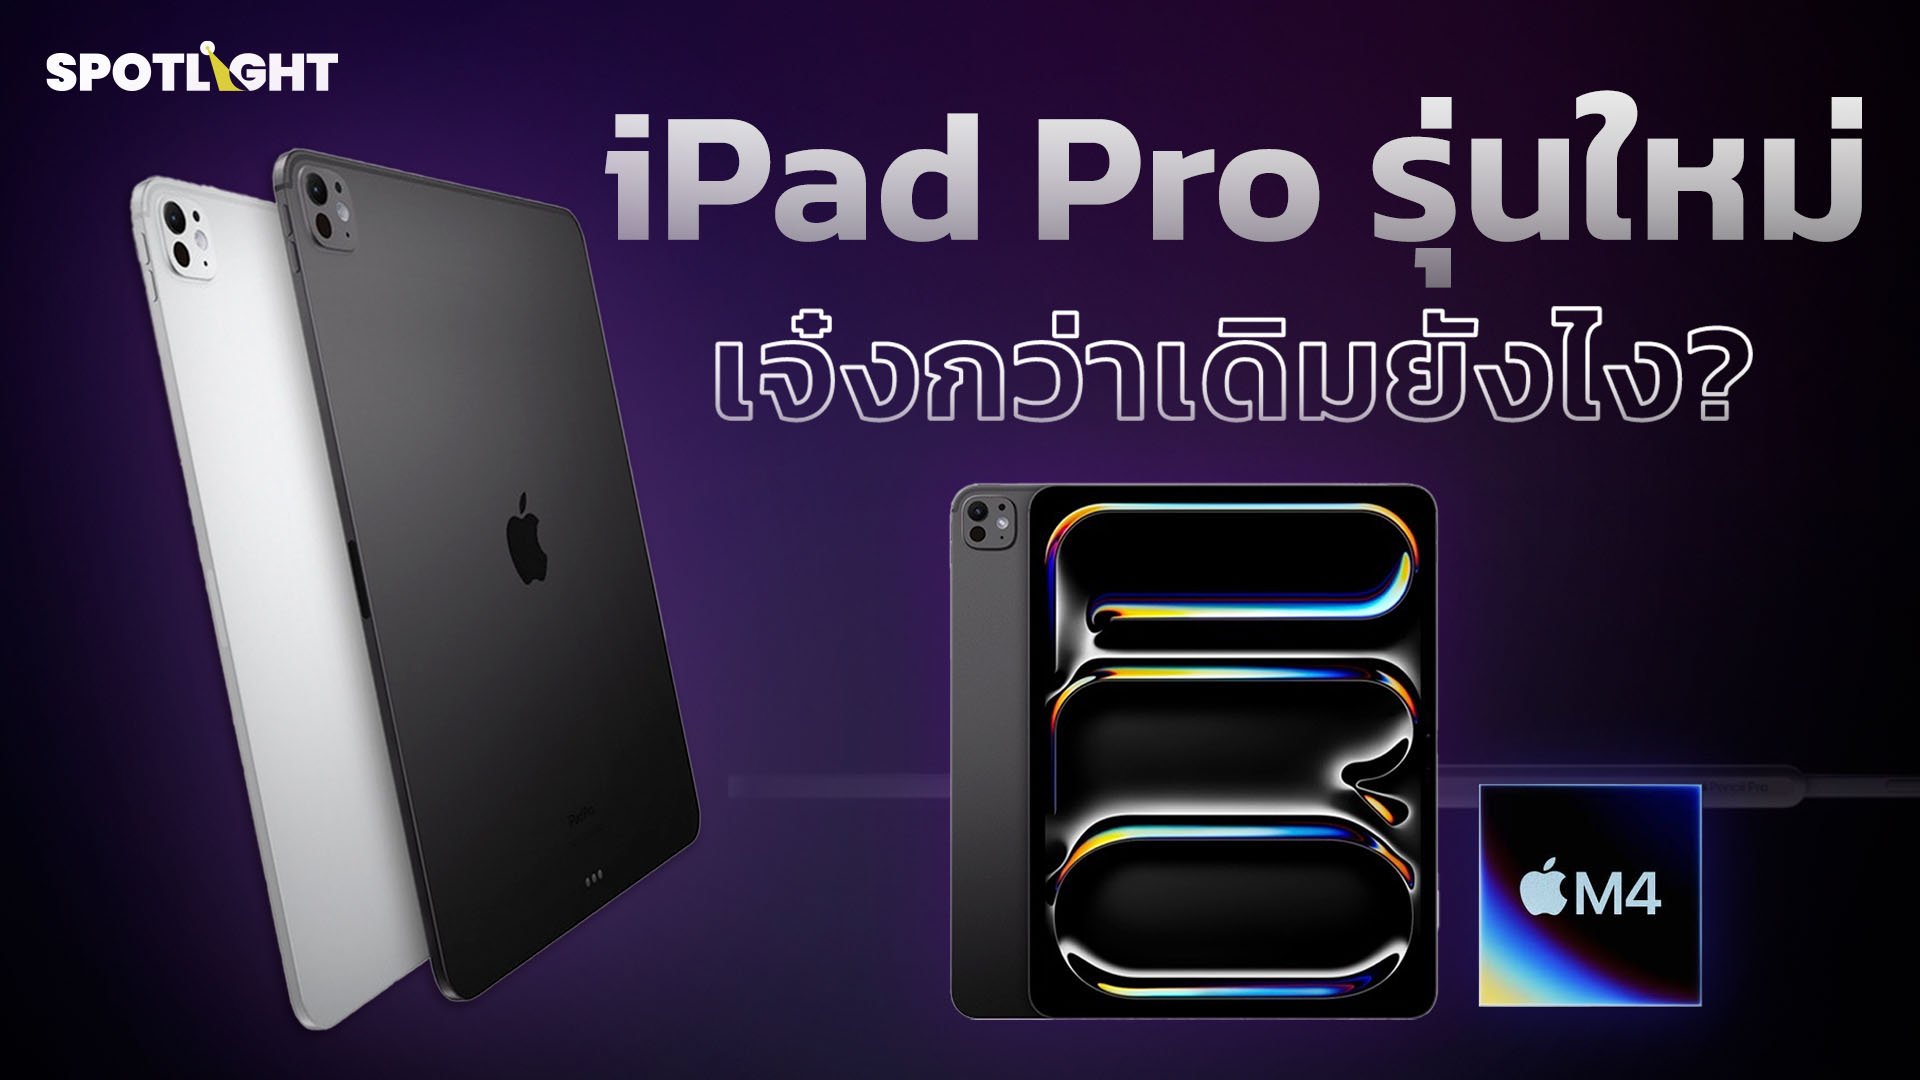 iPad Pro รุ่นใหม่เจ๋งกว่าเดิมยังไง? | Spotlight | 21 พ.ค. 67 | AMARIN TVHD34